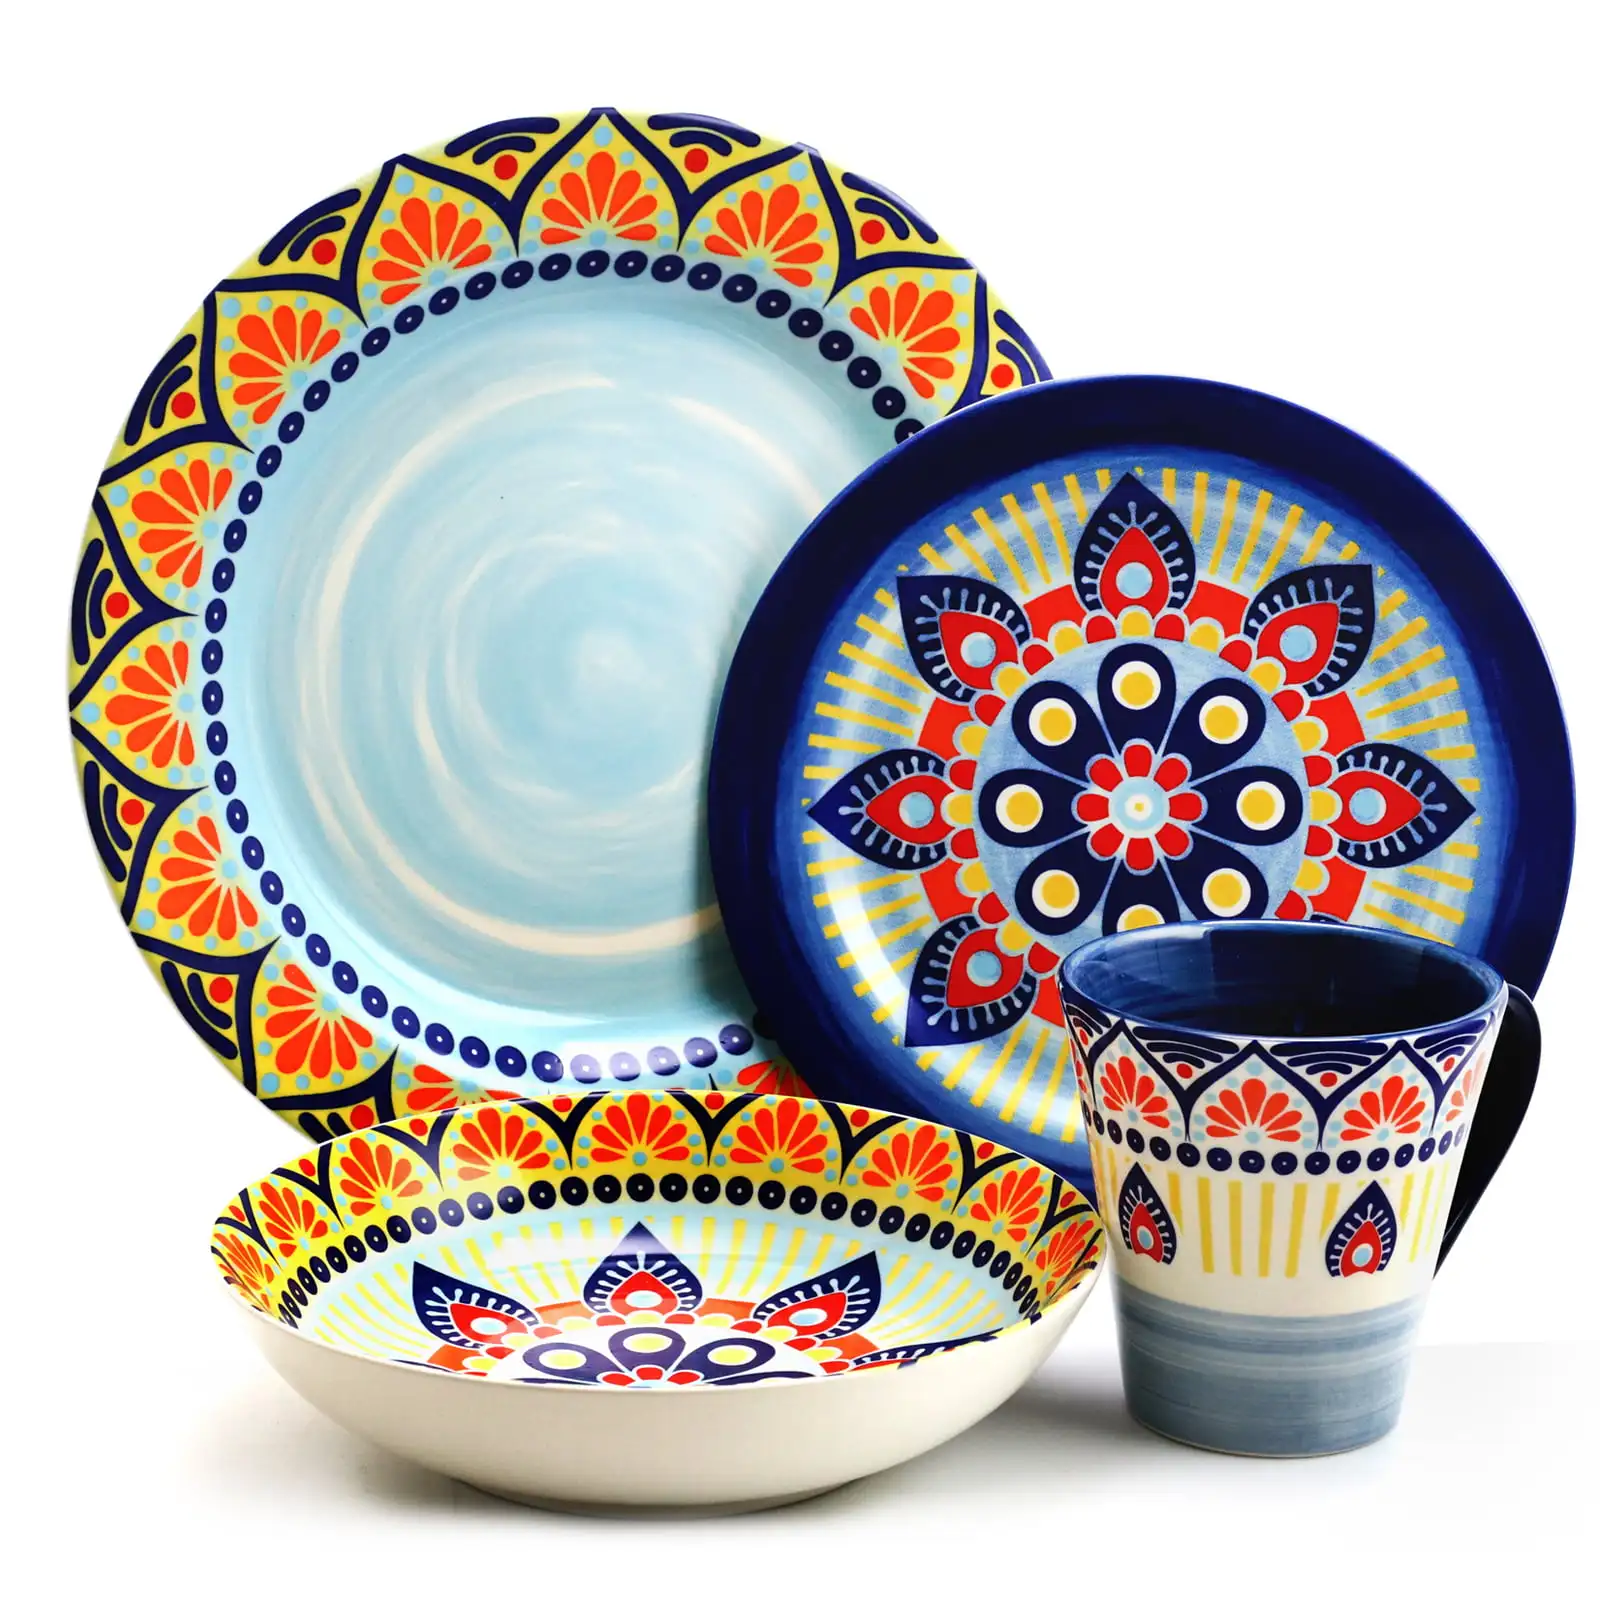 

Набор посуды Elama Zen Blue мозаик из 16 круглых керамических изделий